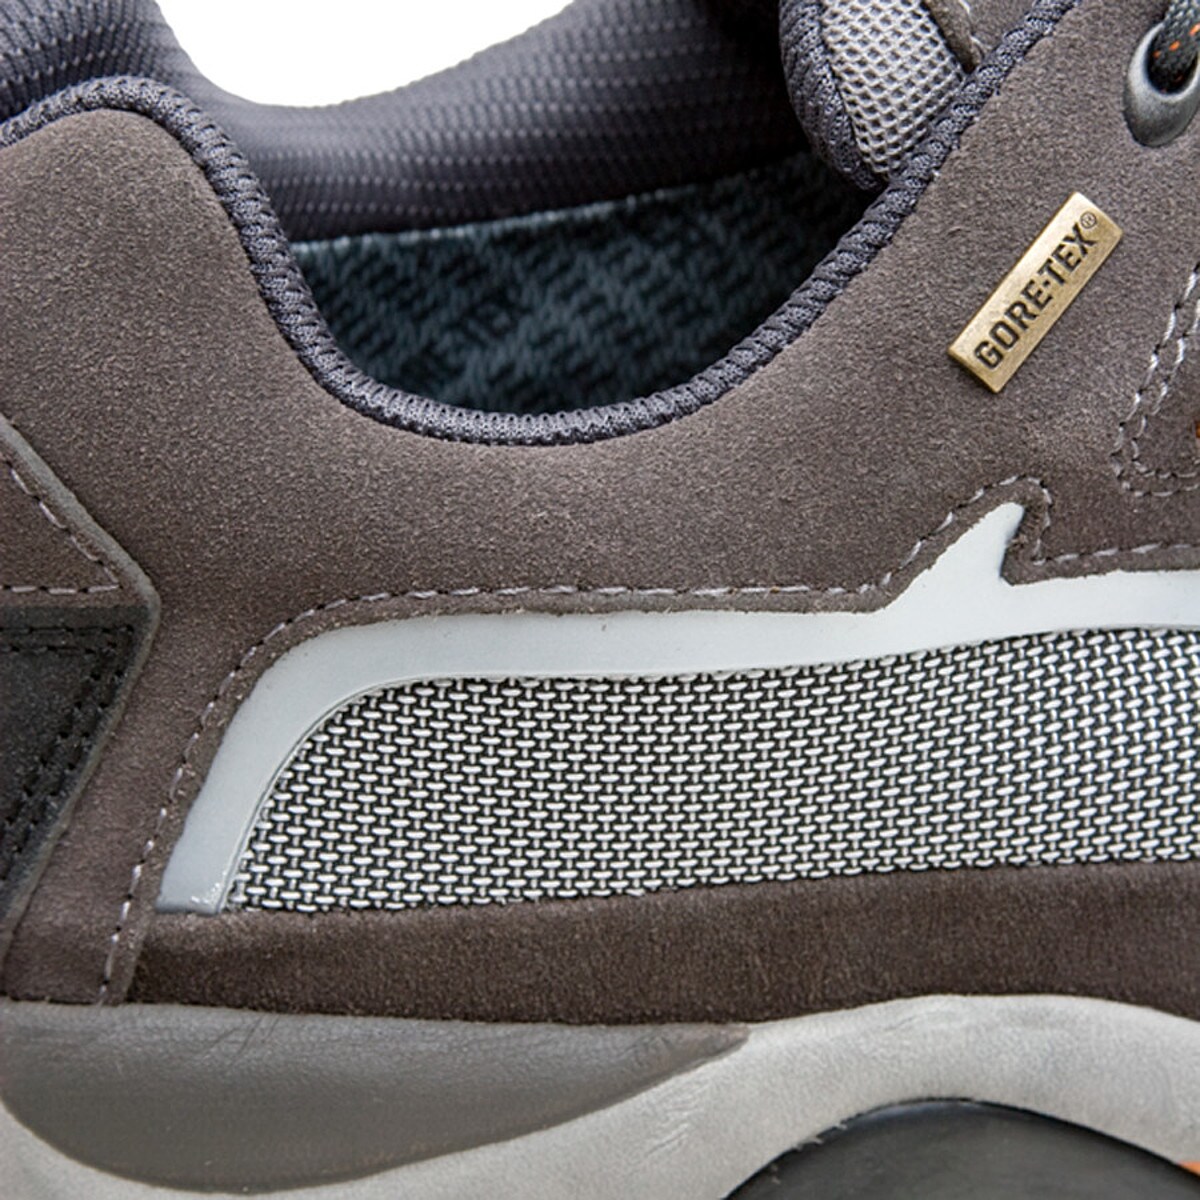 La Sportiva Sandstone GTX-XCR Hiking Shoe - Men's - Footwear